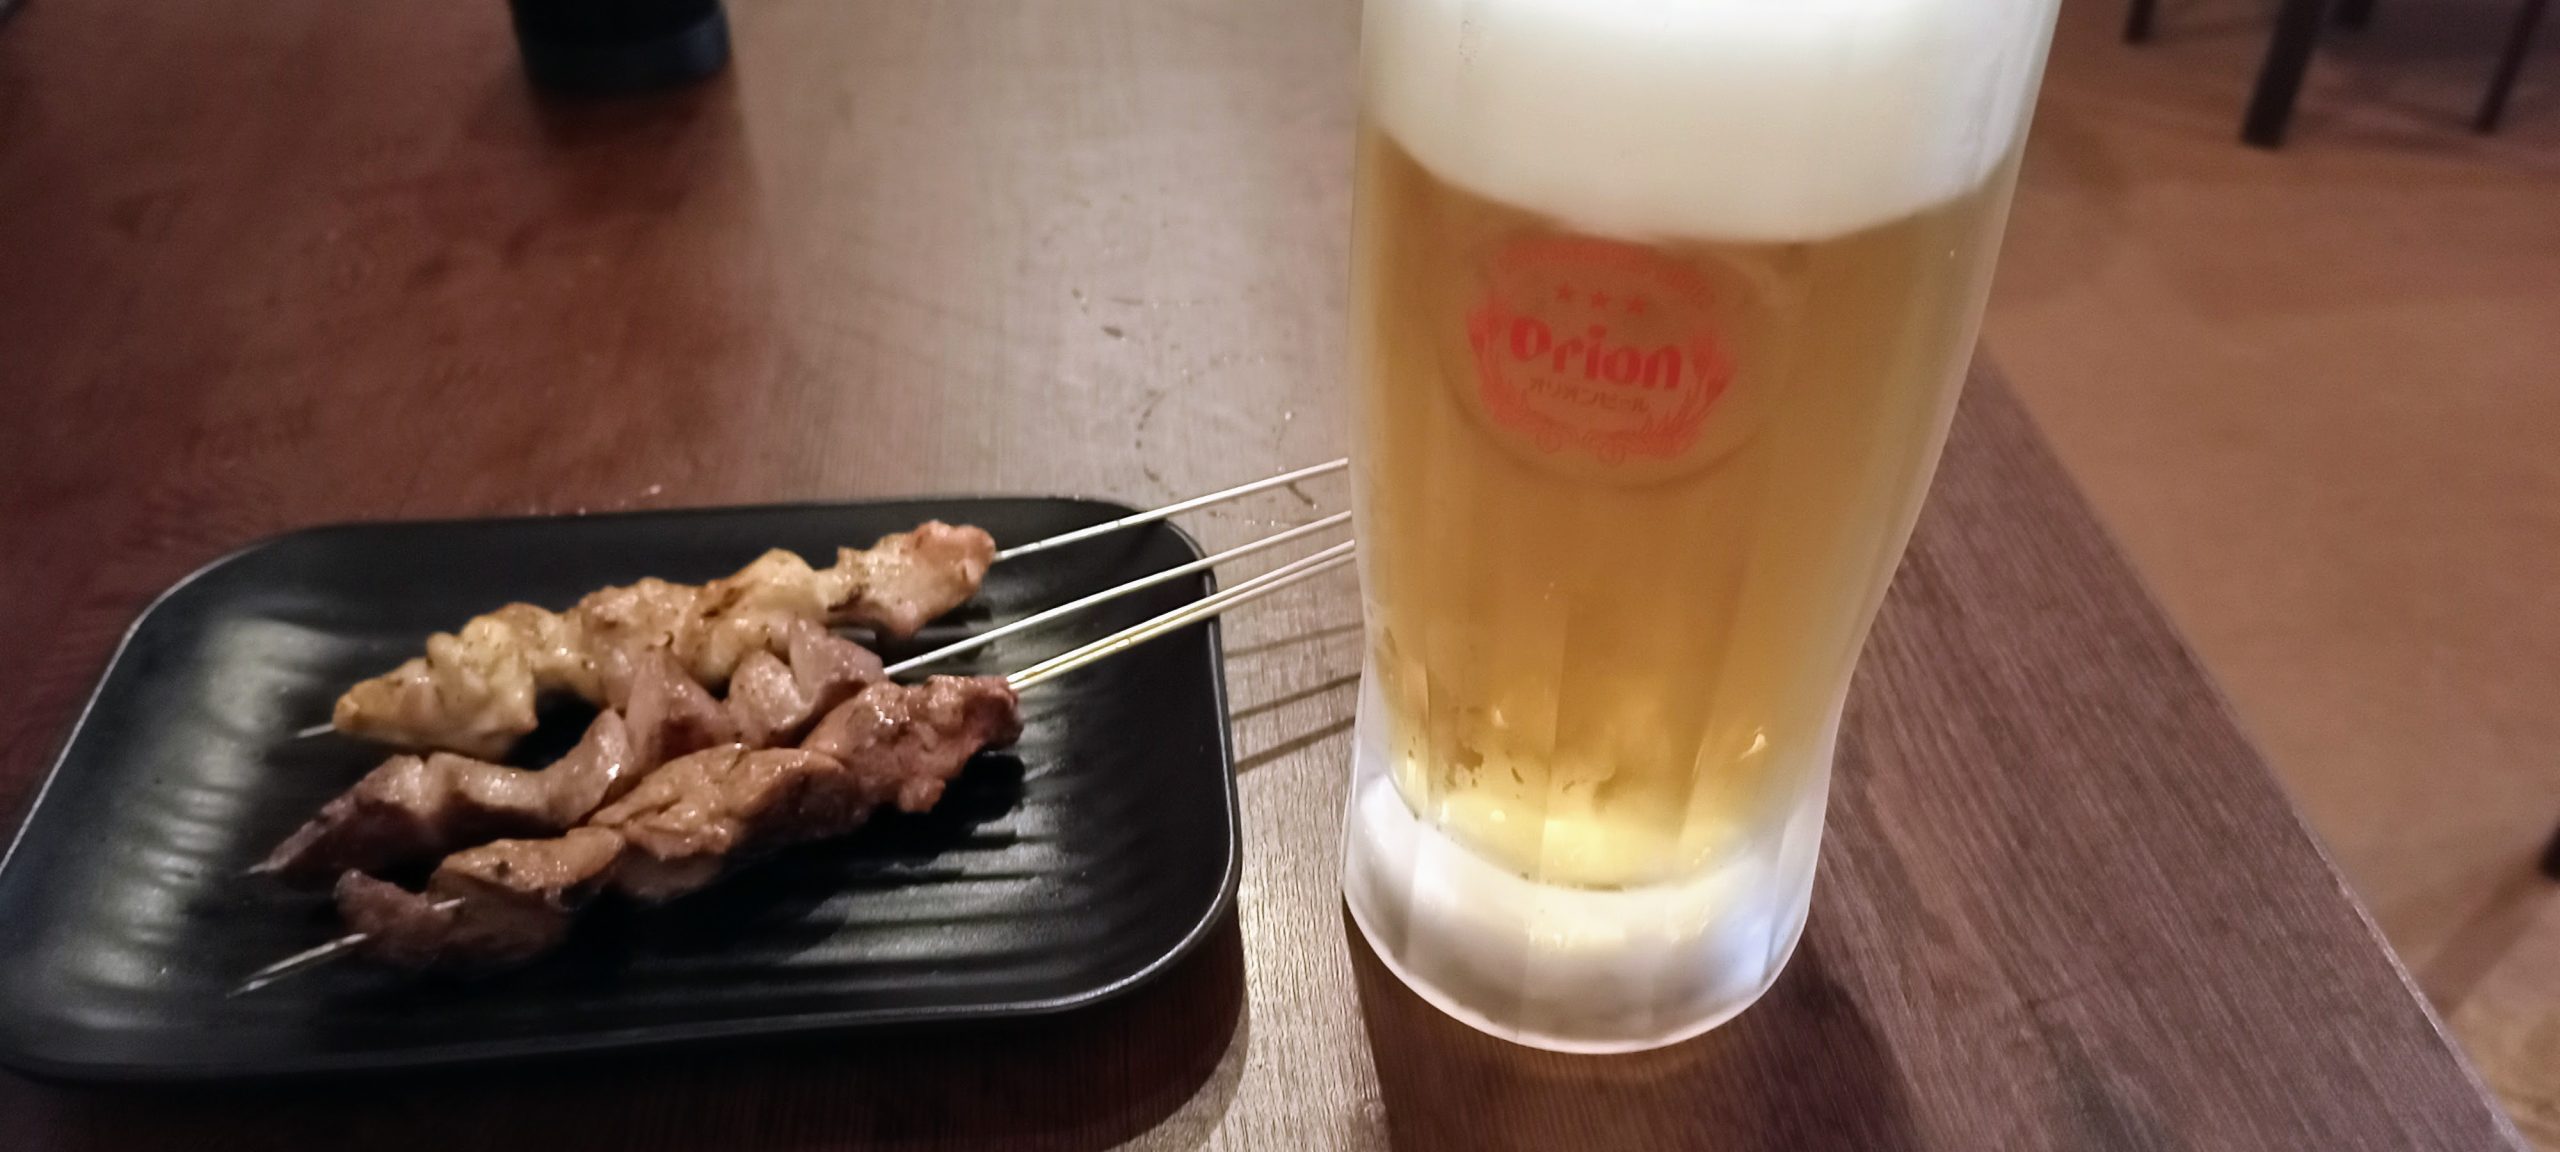 せんべろの串3本と2杯目のオリオン生ビール